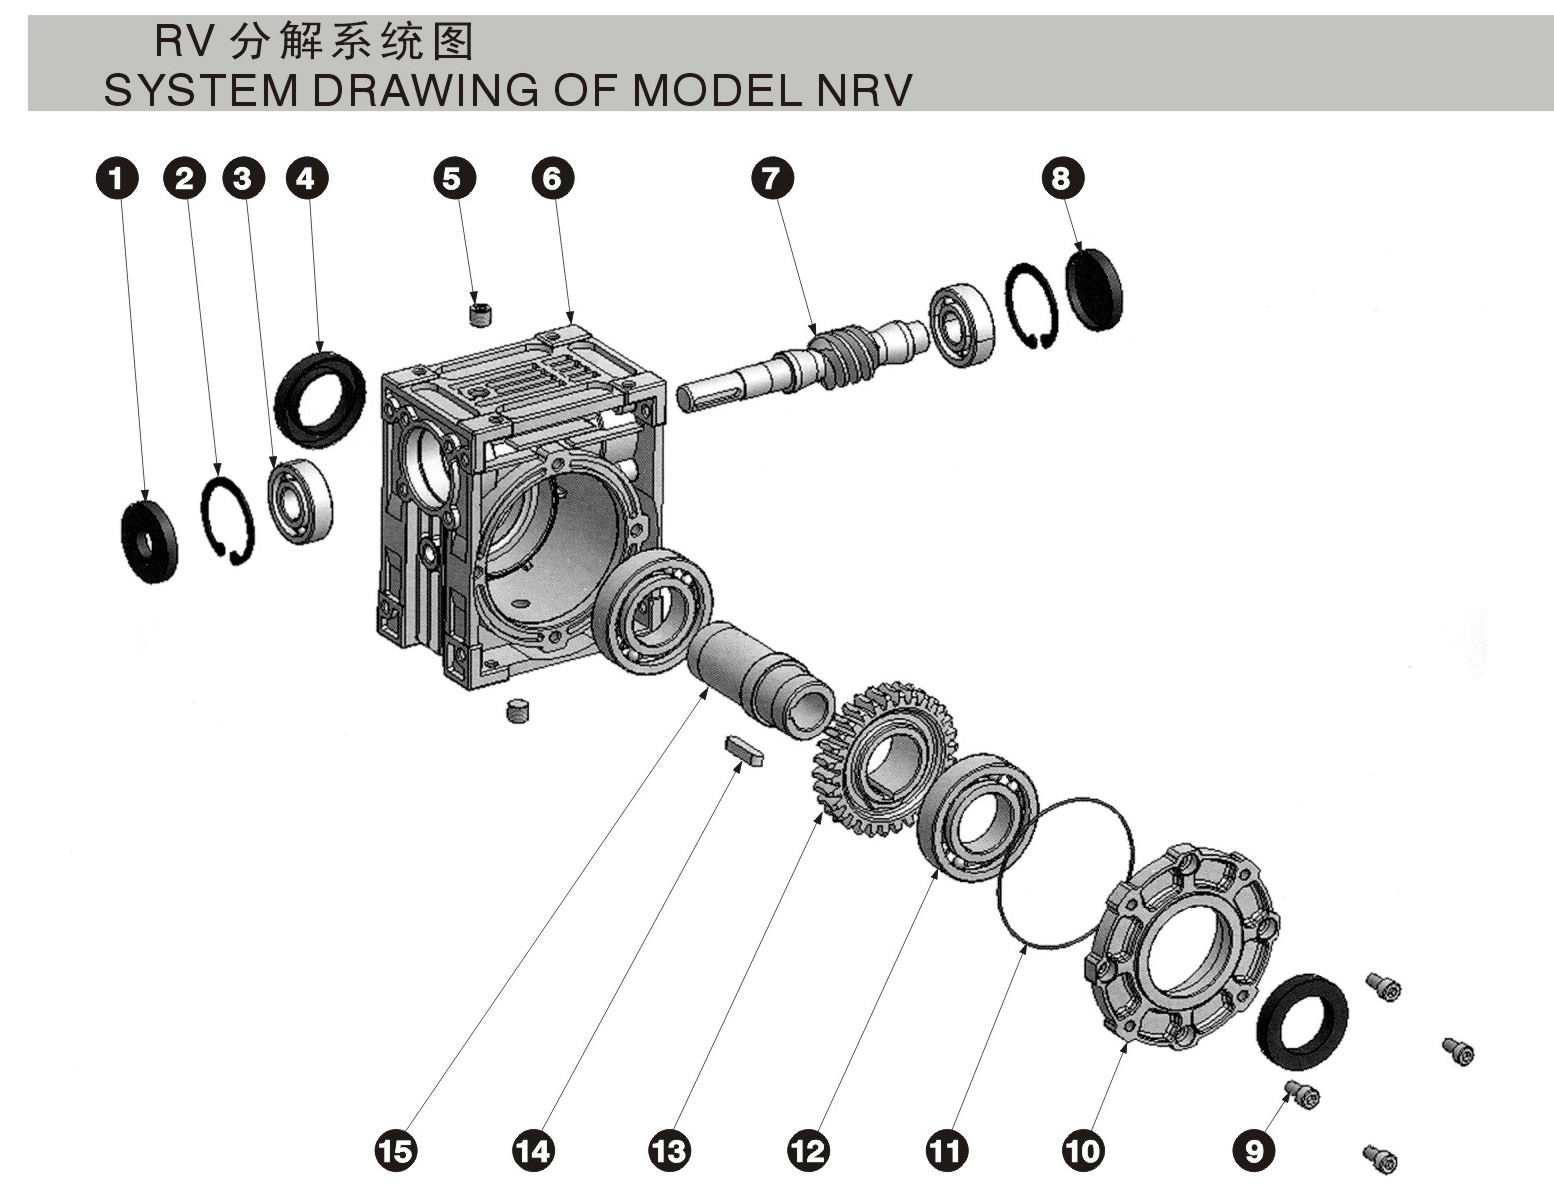 RV75軸輸入型結構圖